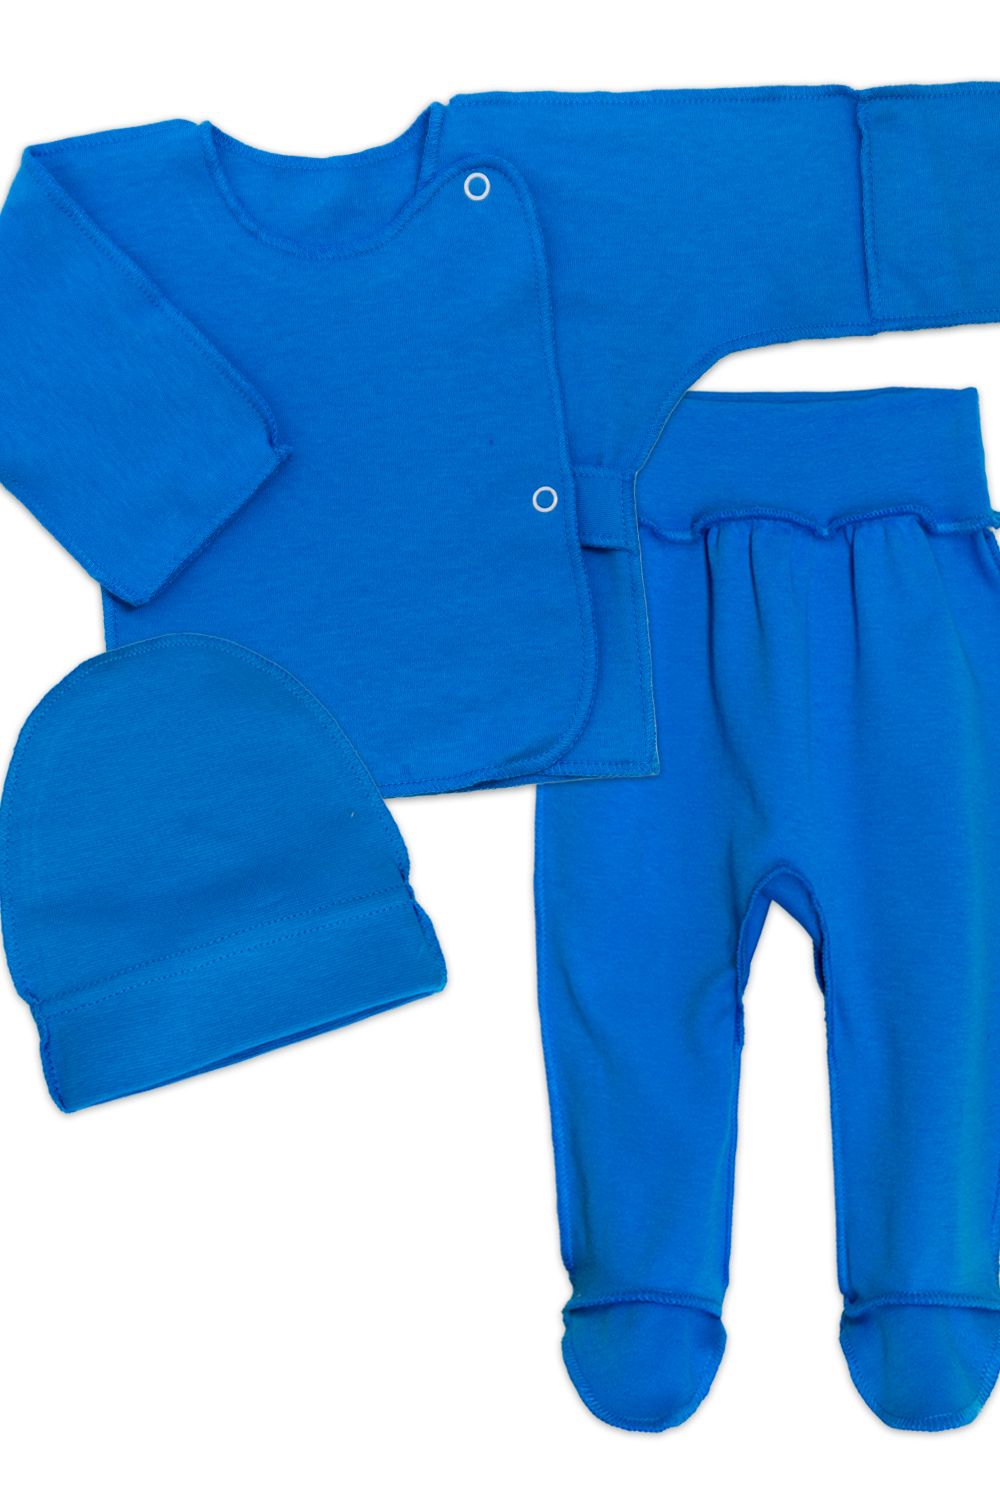 Комплект для новорожденных (распашонка, шапочка, ползунки) 4299 - синий